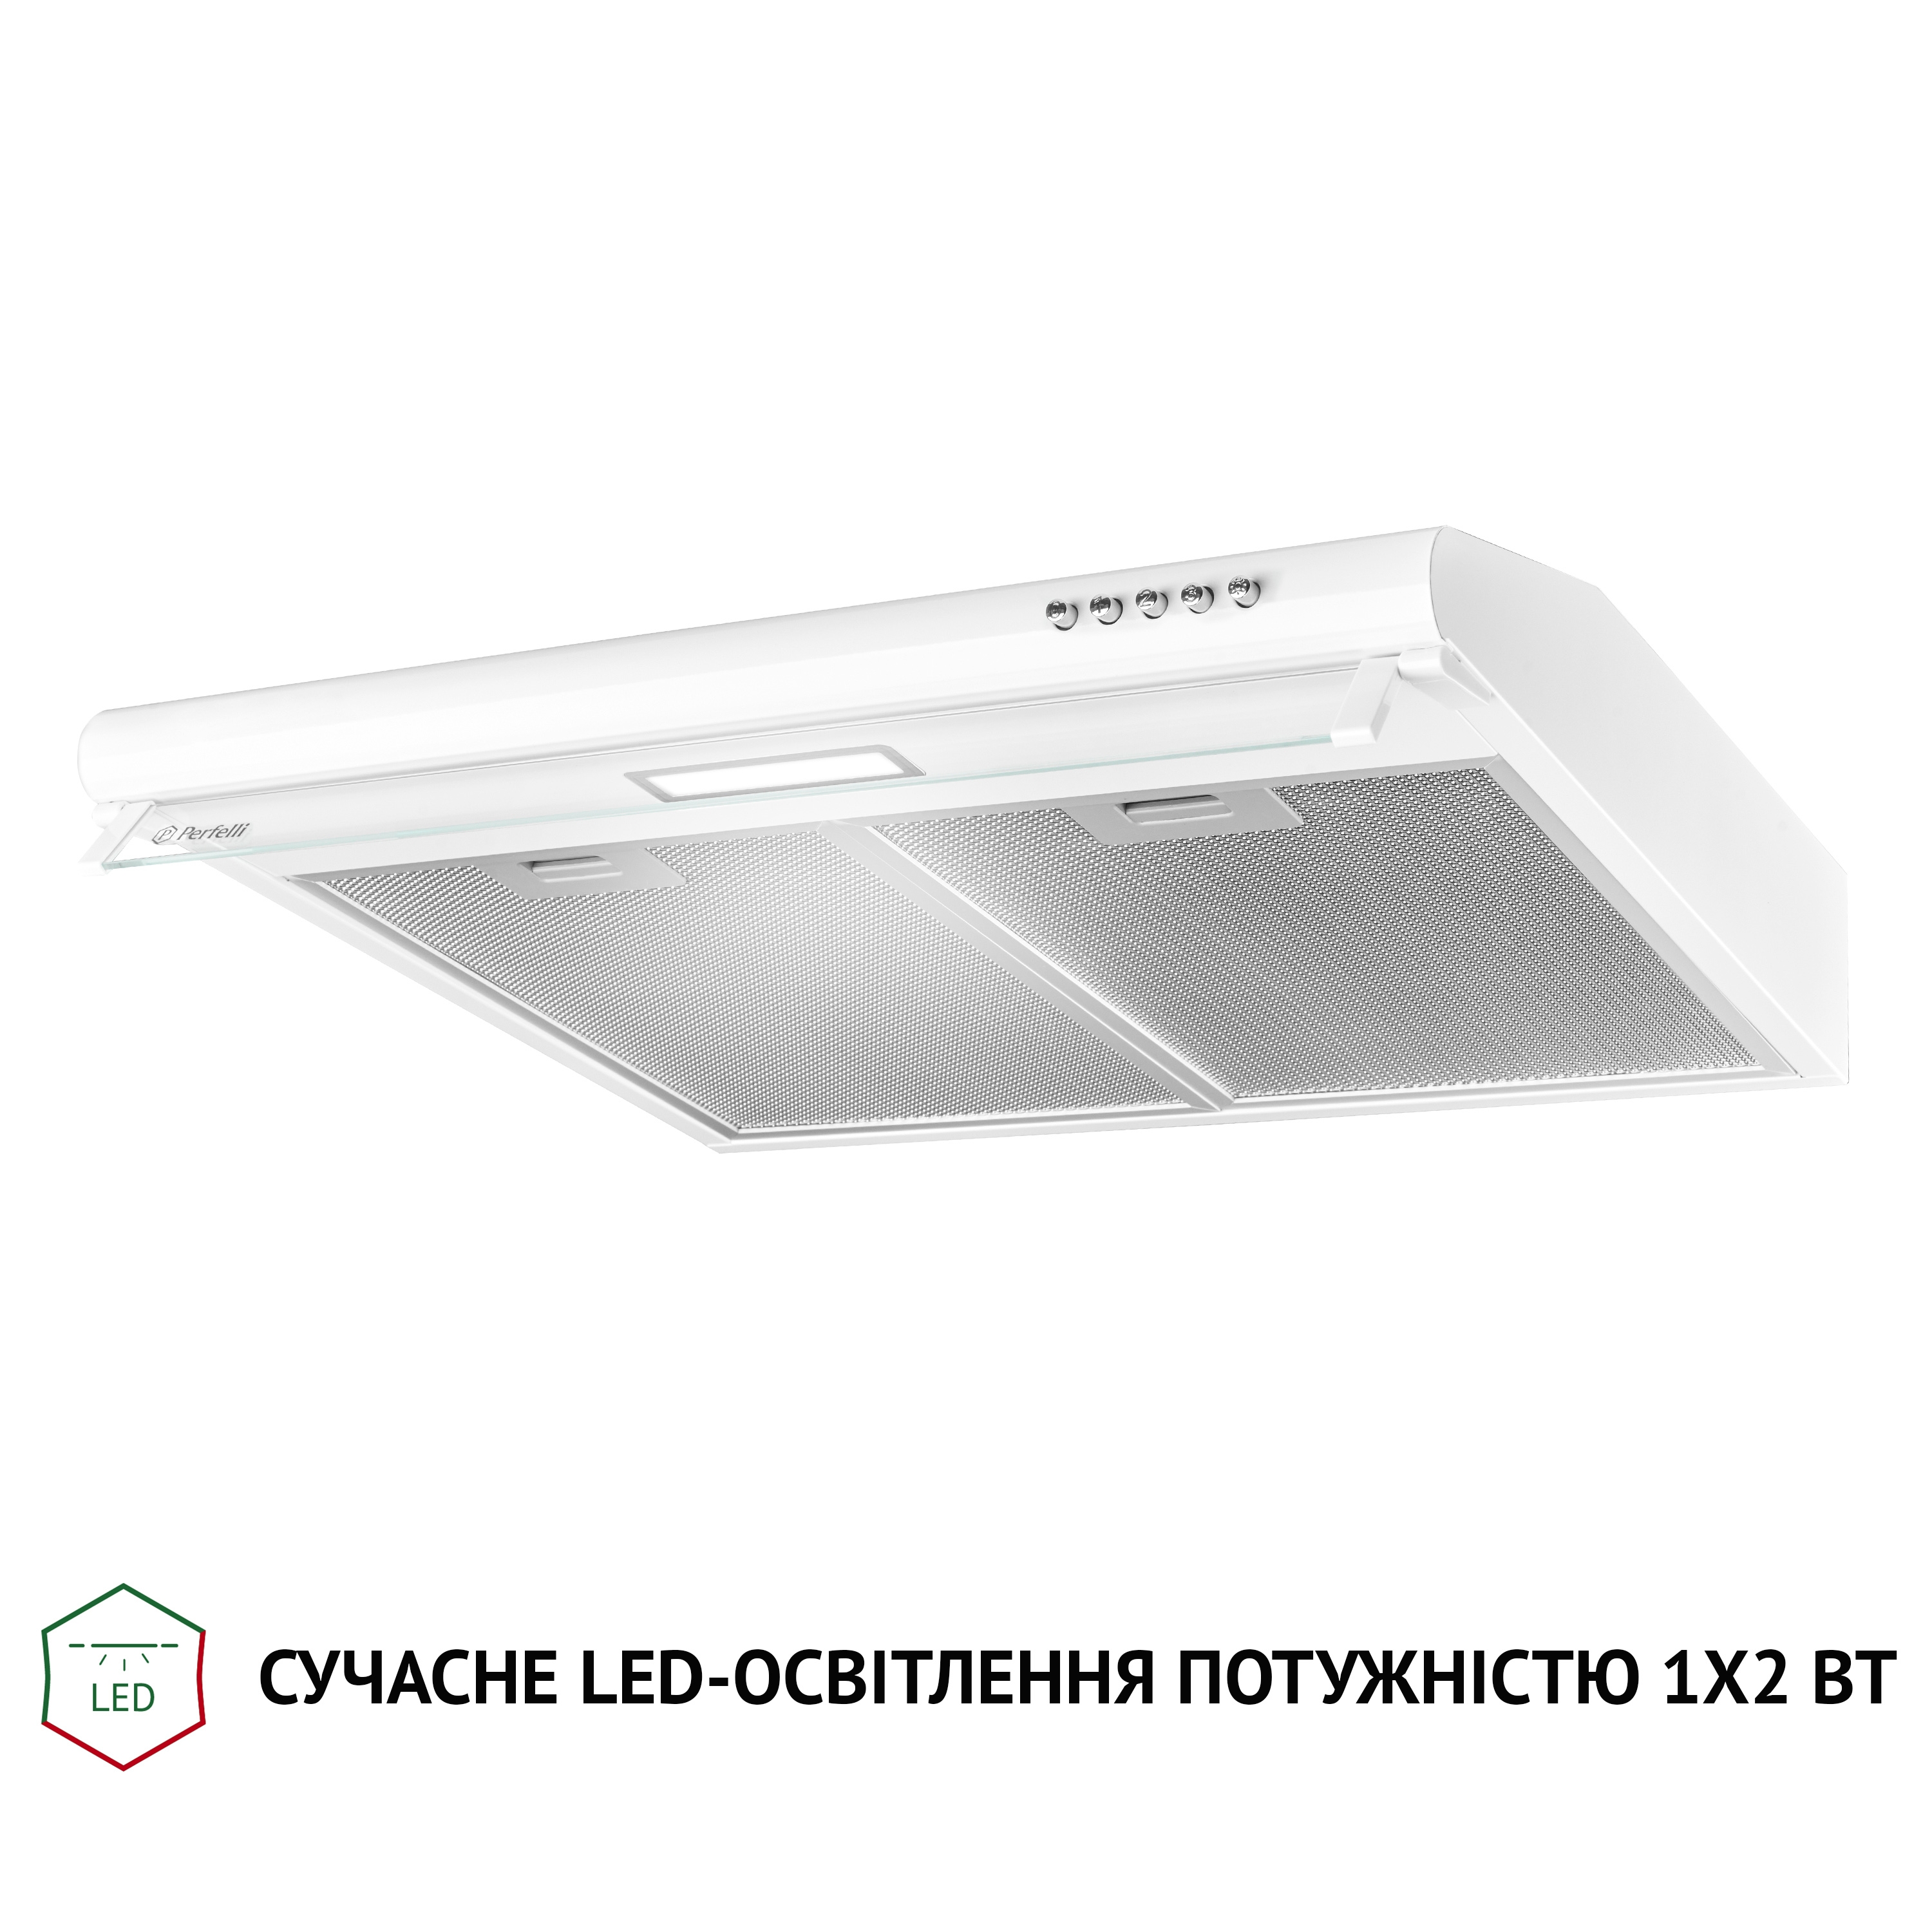 продаём Perfelli PL 6144 W LED в Украине - фото 4